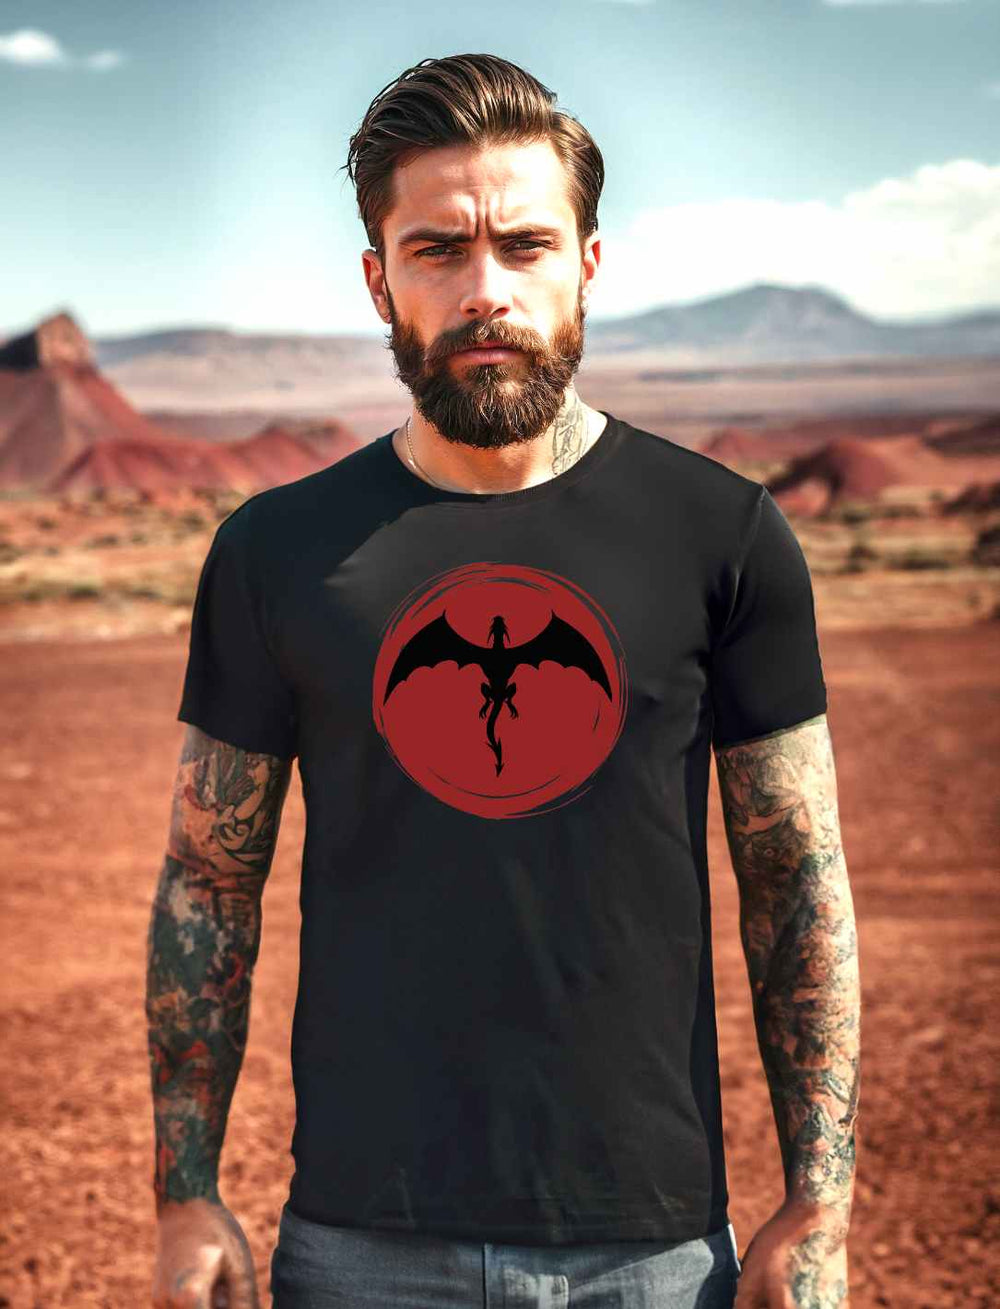 Männliches Model in 'Saga of the Dragon' Organic Unisex T-Shirt in Schwarz, steht vor einer Wüstenlandschaft, wobei das markante Drachen-Design auf der Brust im Mittelpunkt steht.